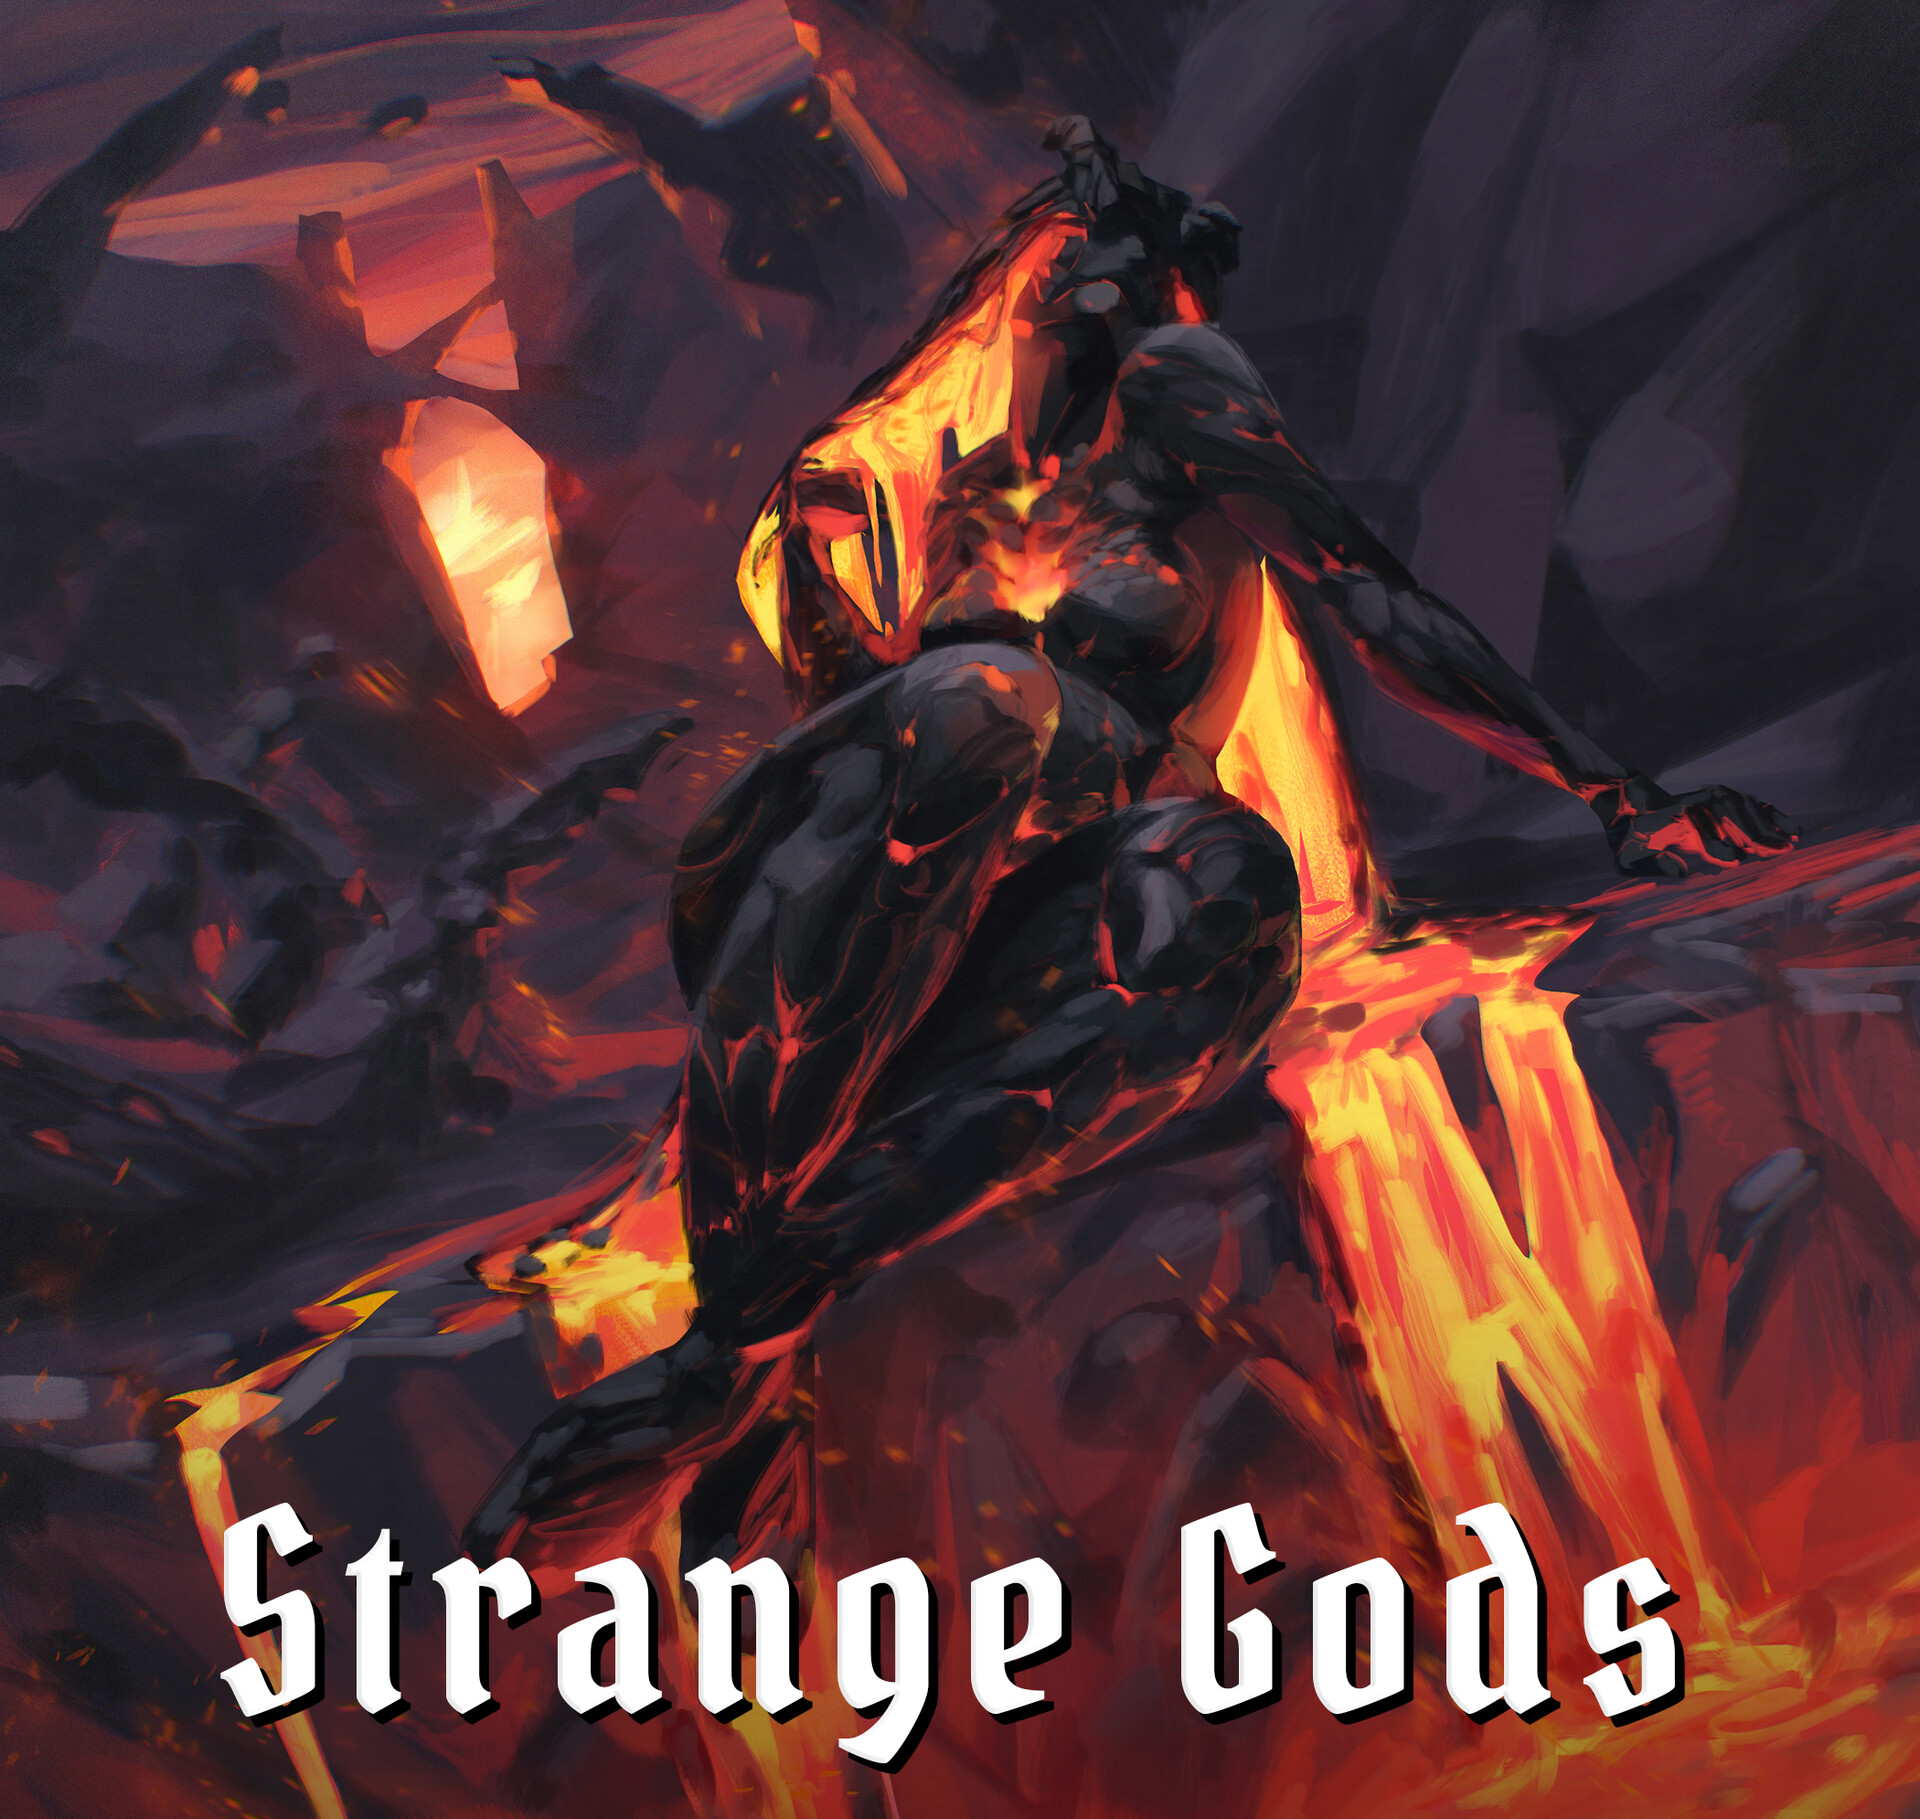 ArtStation - Strange Gods - II